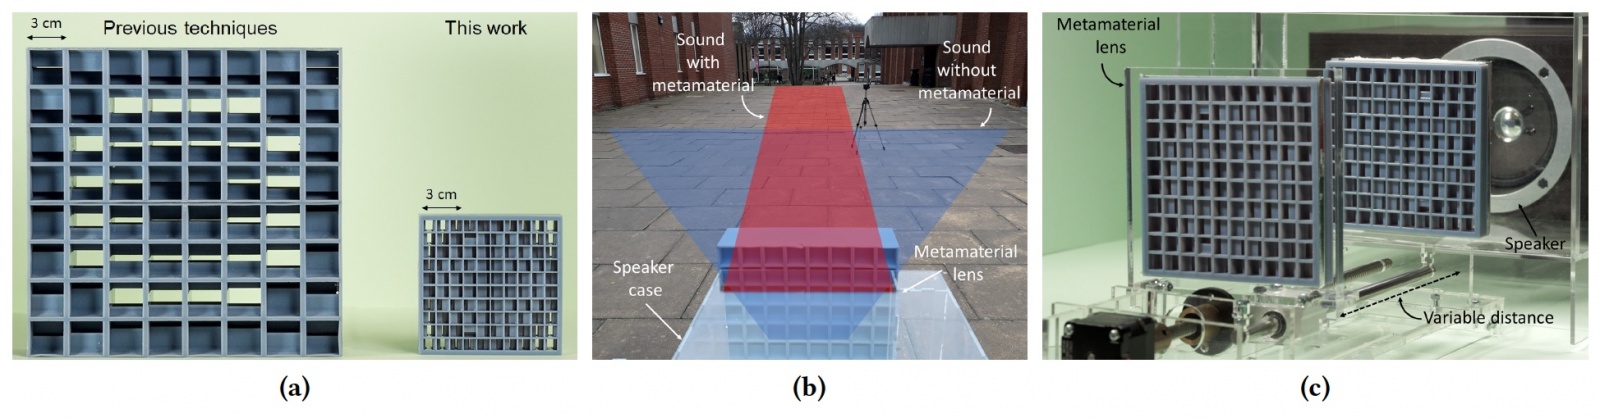 Кастомизация звука: «линзы» из метаматериала для контроля звукового поля - 2